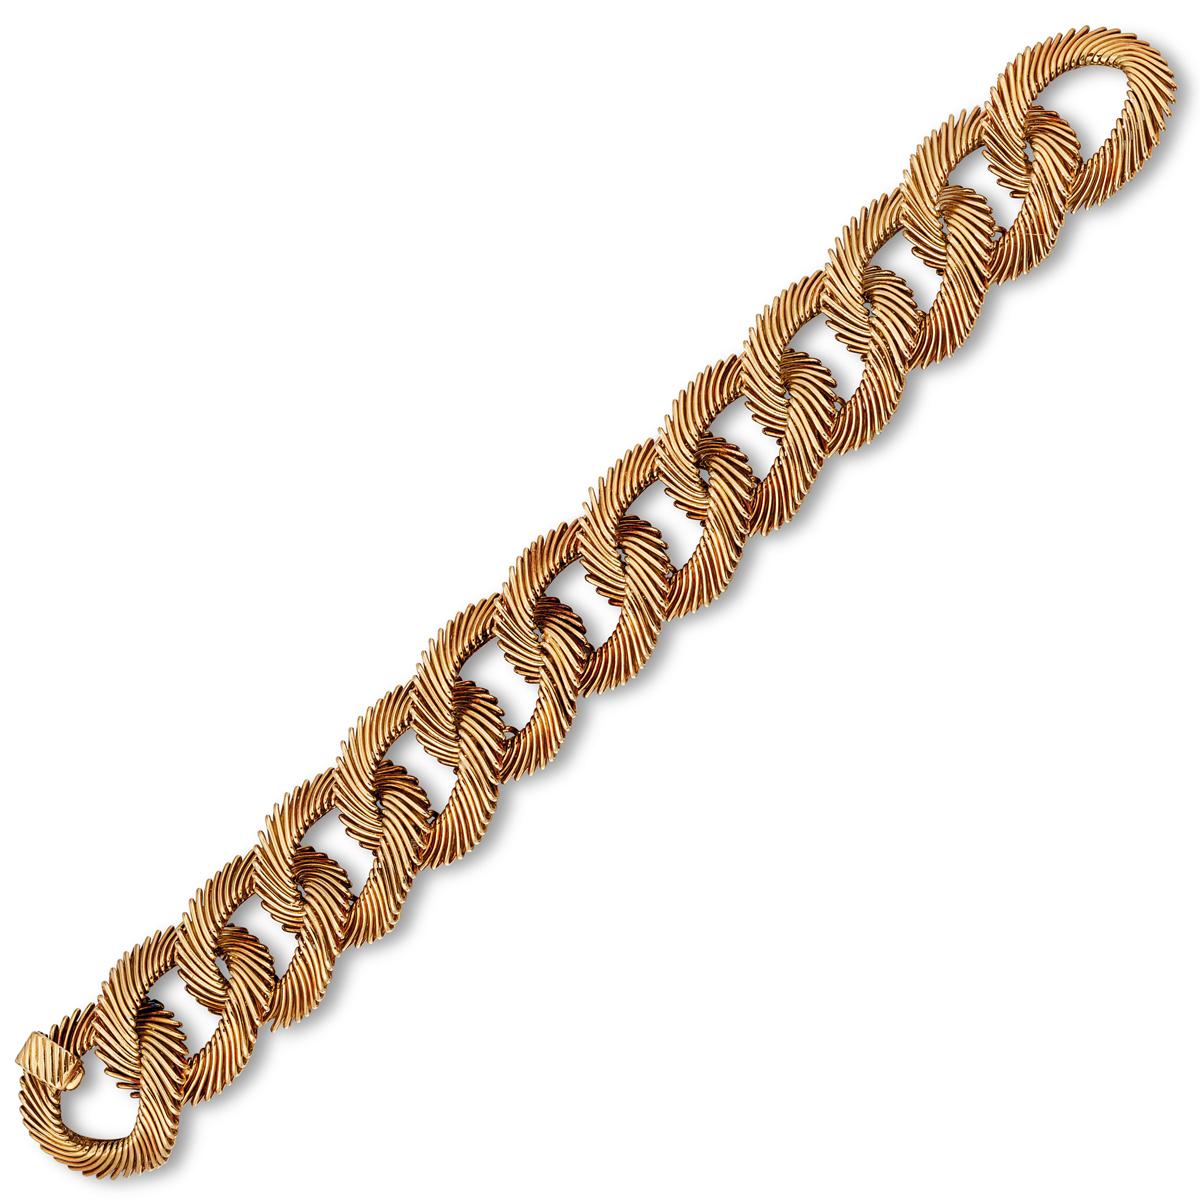 Un incroyable bracelet de Van Cleef & Arpels conçu par Georges L Enfant vers les années 1960 mettant en valeur un motif de cheveux d'ange en or jaune 18k. Le bracelet a un poids impressionnant de 84,6 grammes.

Longueur : 7.83